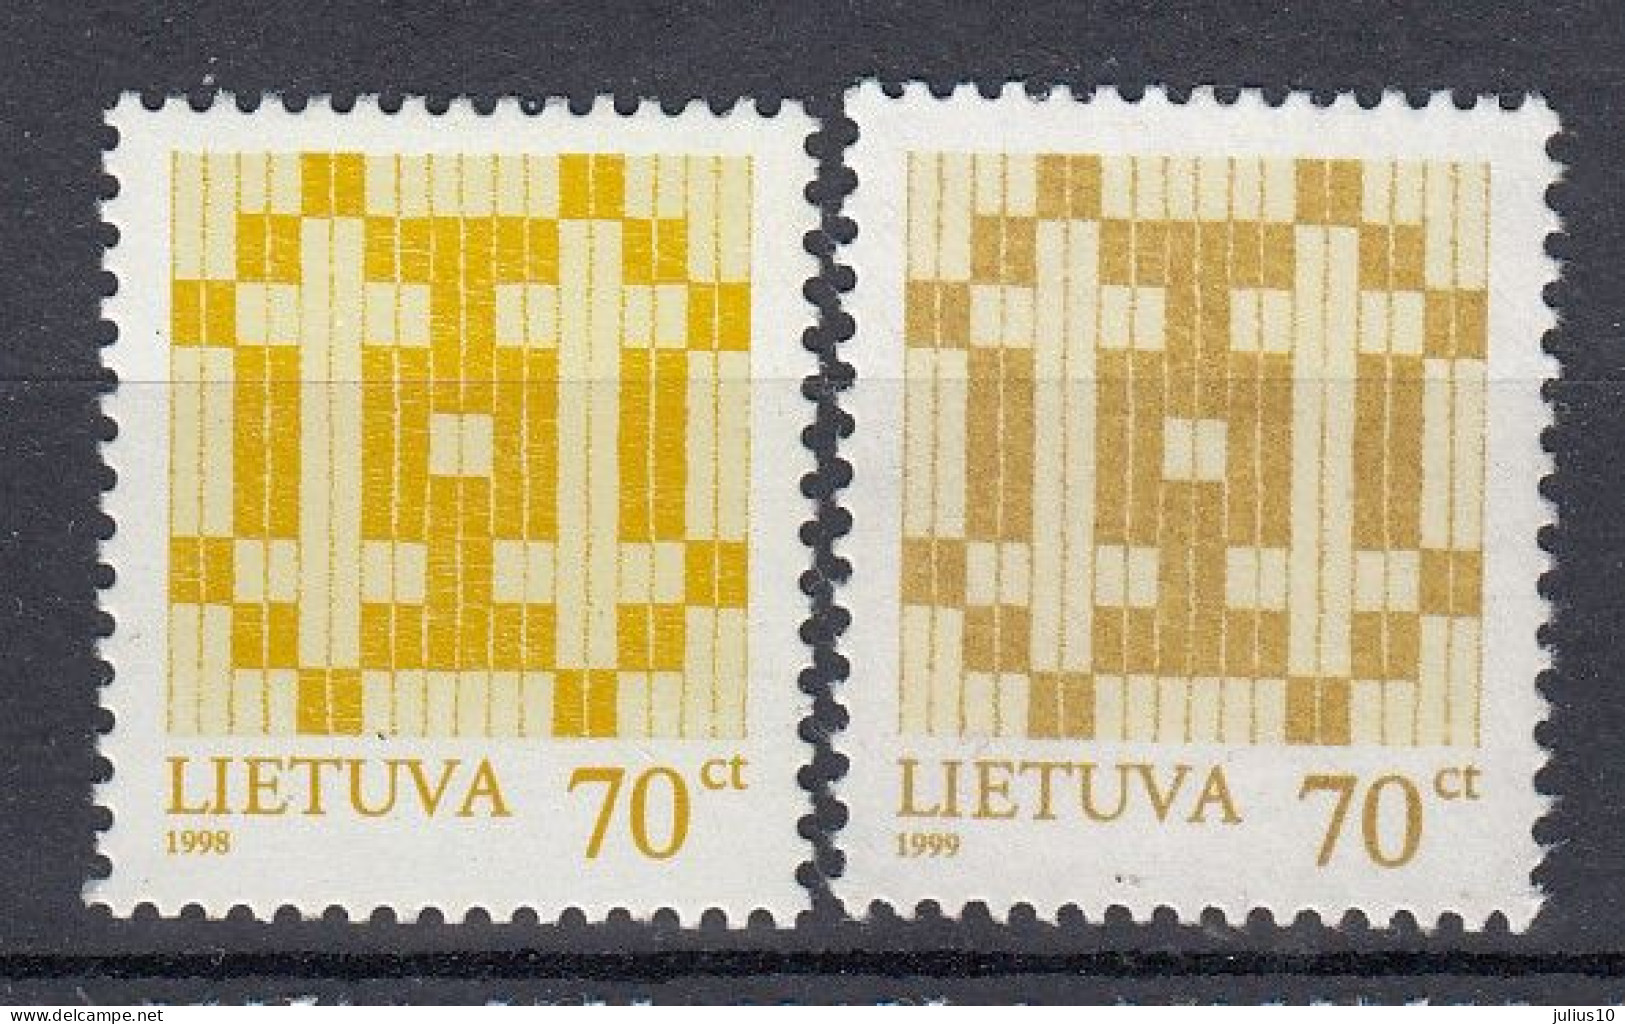 LITHUANIA 1998, 1999 Double Cross MNH(**) Mi 668 I, 668 II #Lt1180 - Lituanie